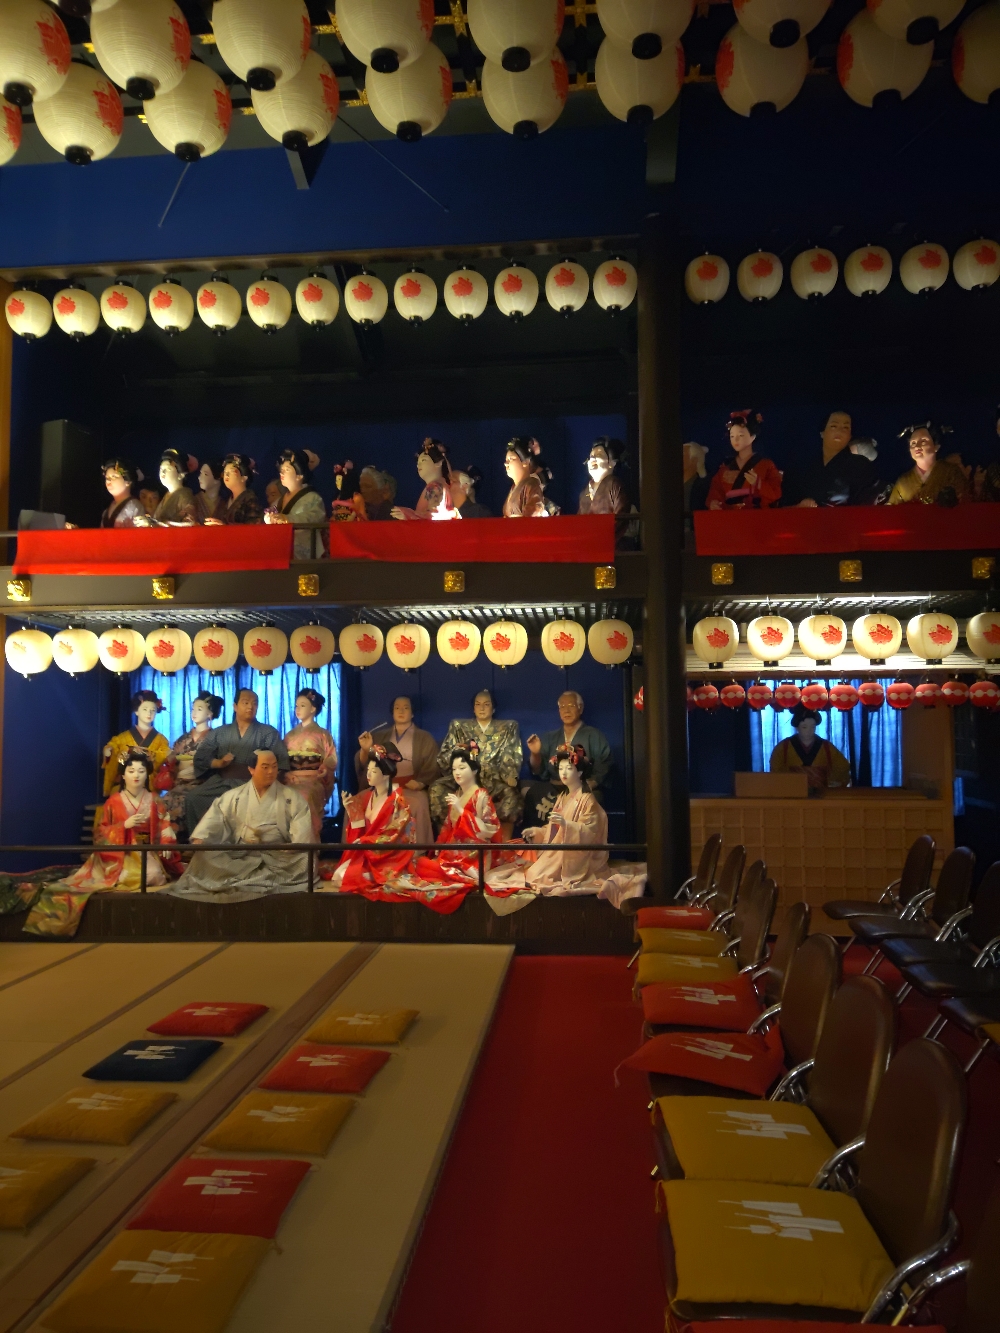 歌舞伎を観る人形達